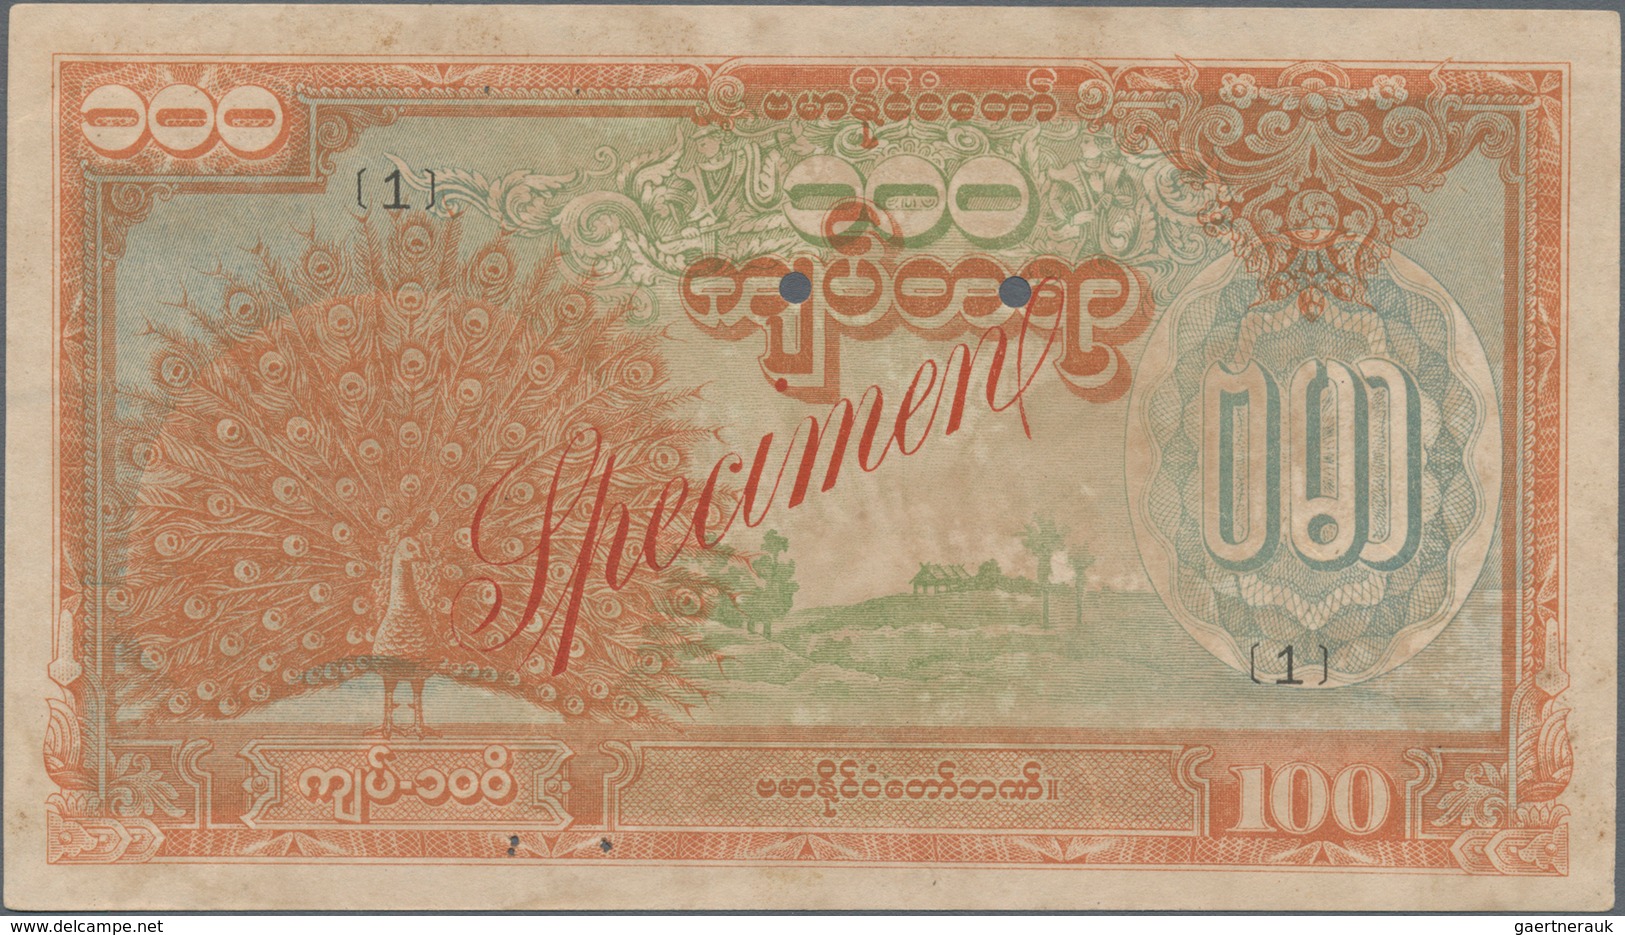 Burma / Myanmar / Birma: Japanese Puppet Bank Of Burma 100 Kyats ND(1944) SPECIMEN, P.21s1, Complete - Myanmar